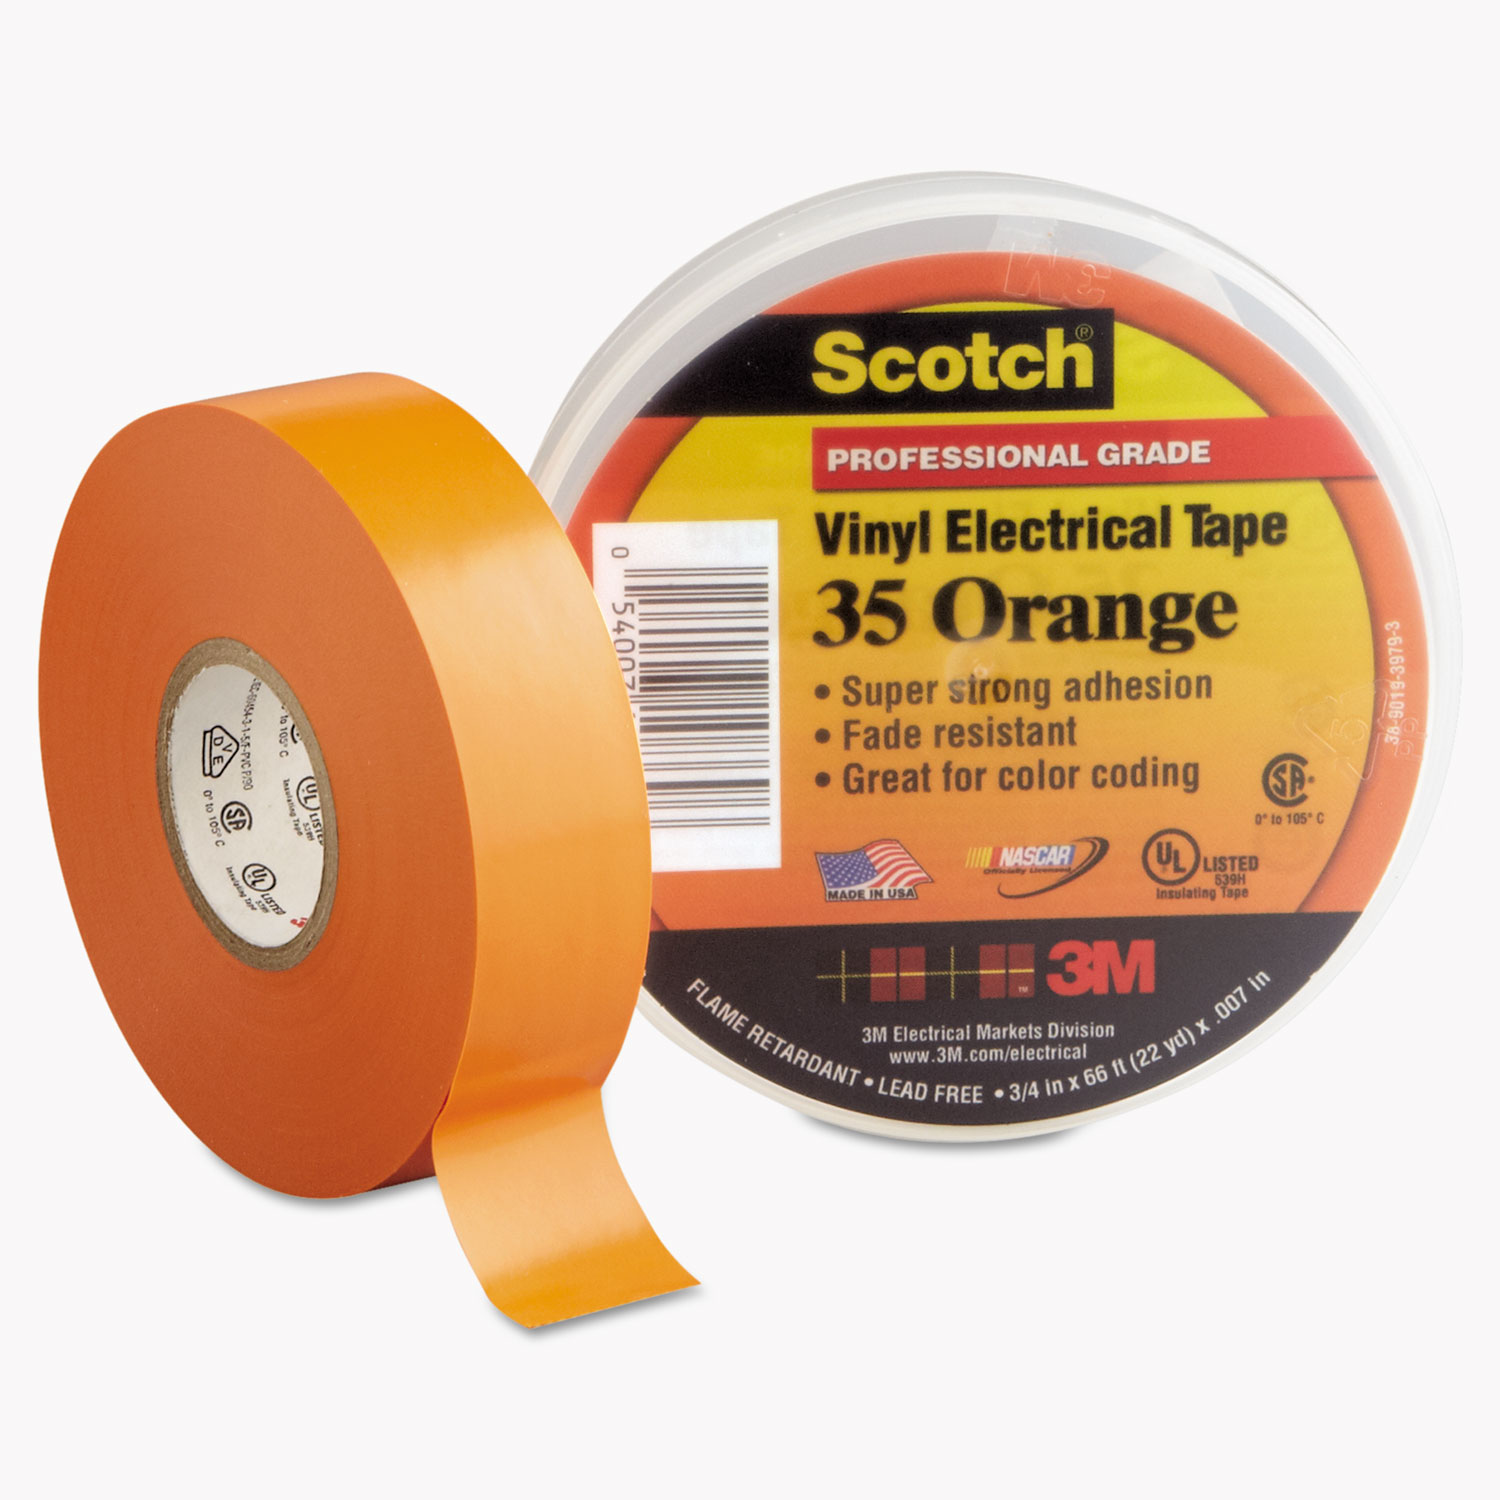 3M Scotch 35 Vinyl Electrical Tape,3/4" x 66' Orange-Made in USA 